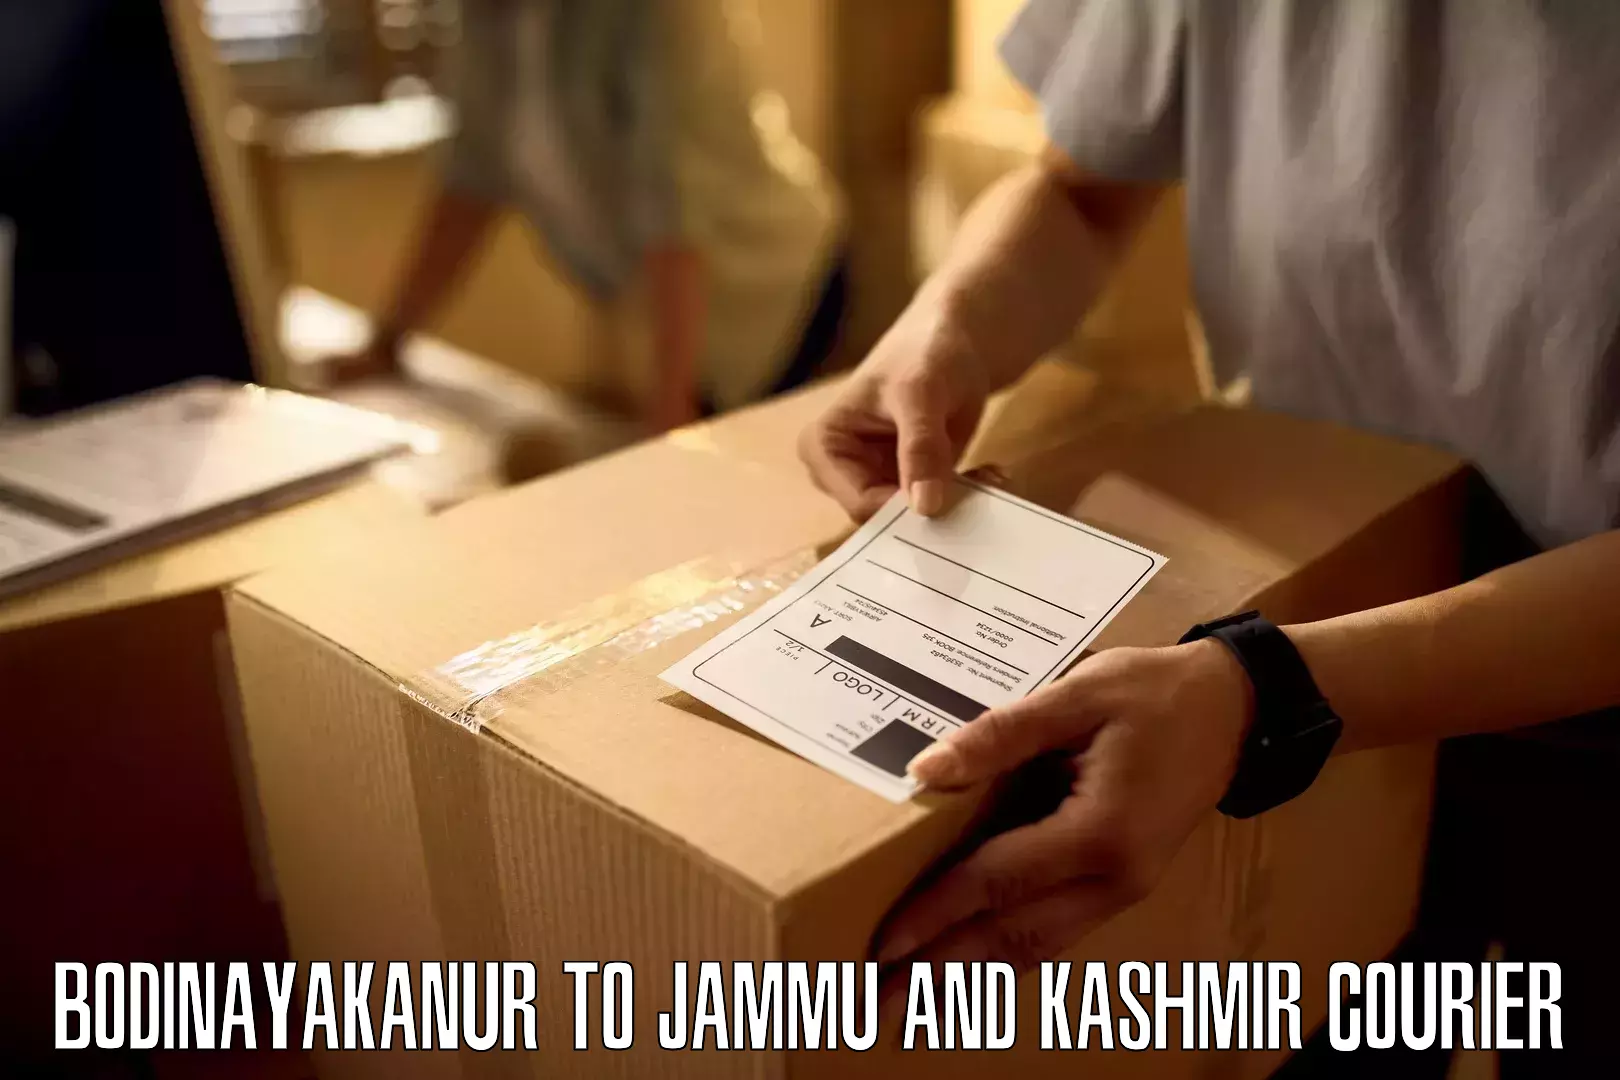 Premium courier services Bodinayakanur to University of Jammu